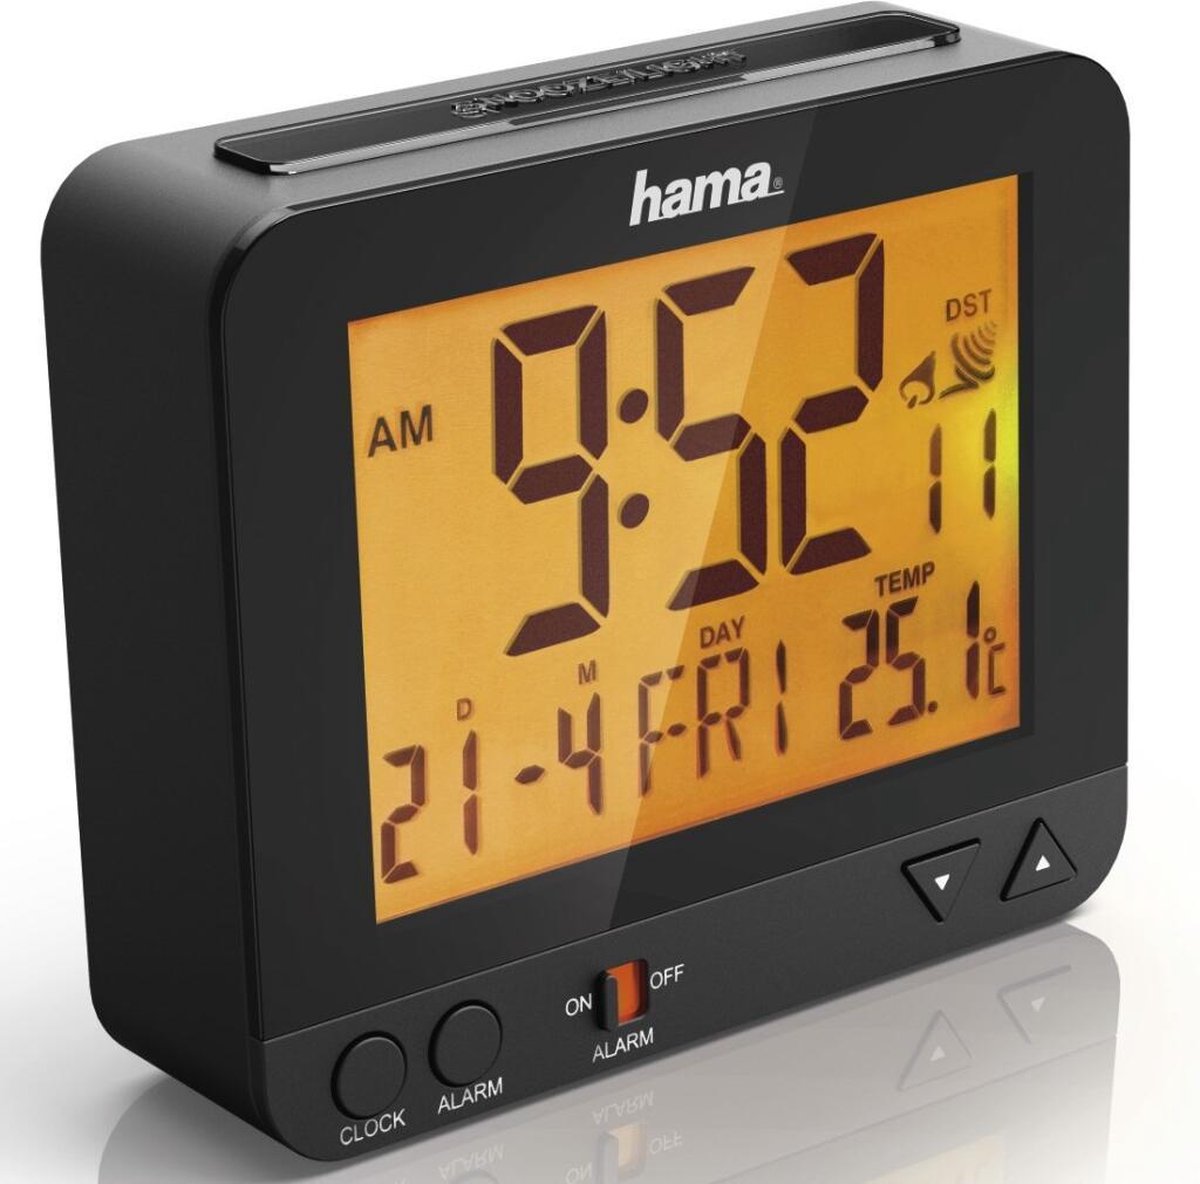 Hama Radio numérique DR35 DAB / DAB+, 2 alarmes, fonction de répétition, minuterie darrêt, prise casque, entrée AUX, capteur de température avec affichage, radio-réveil Noir 